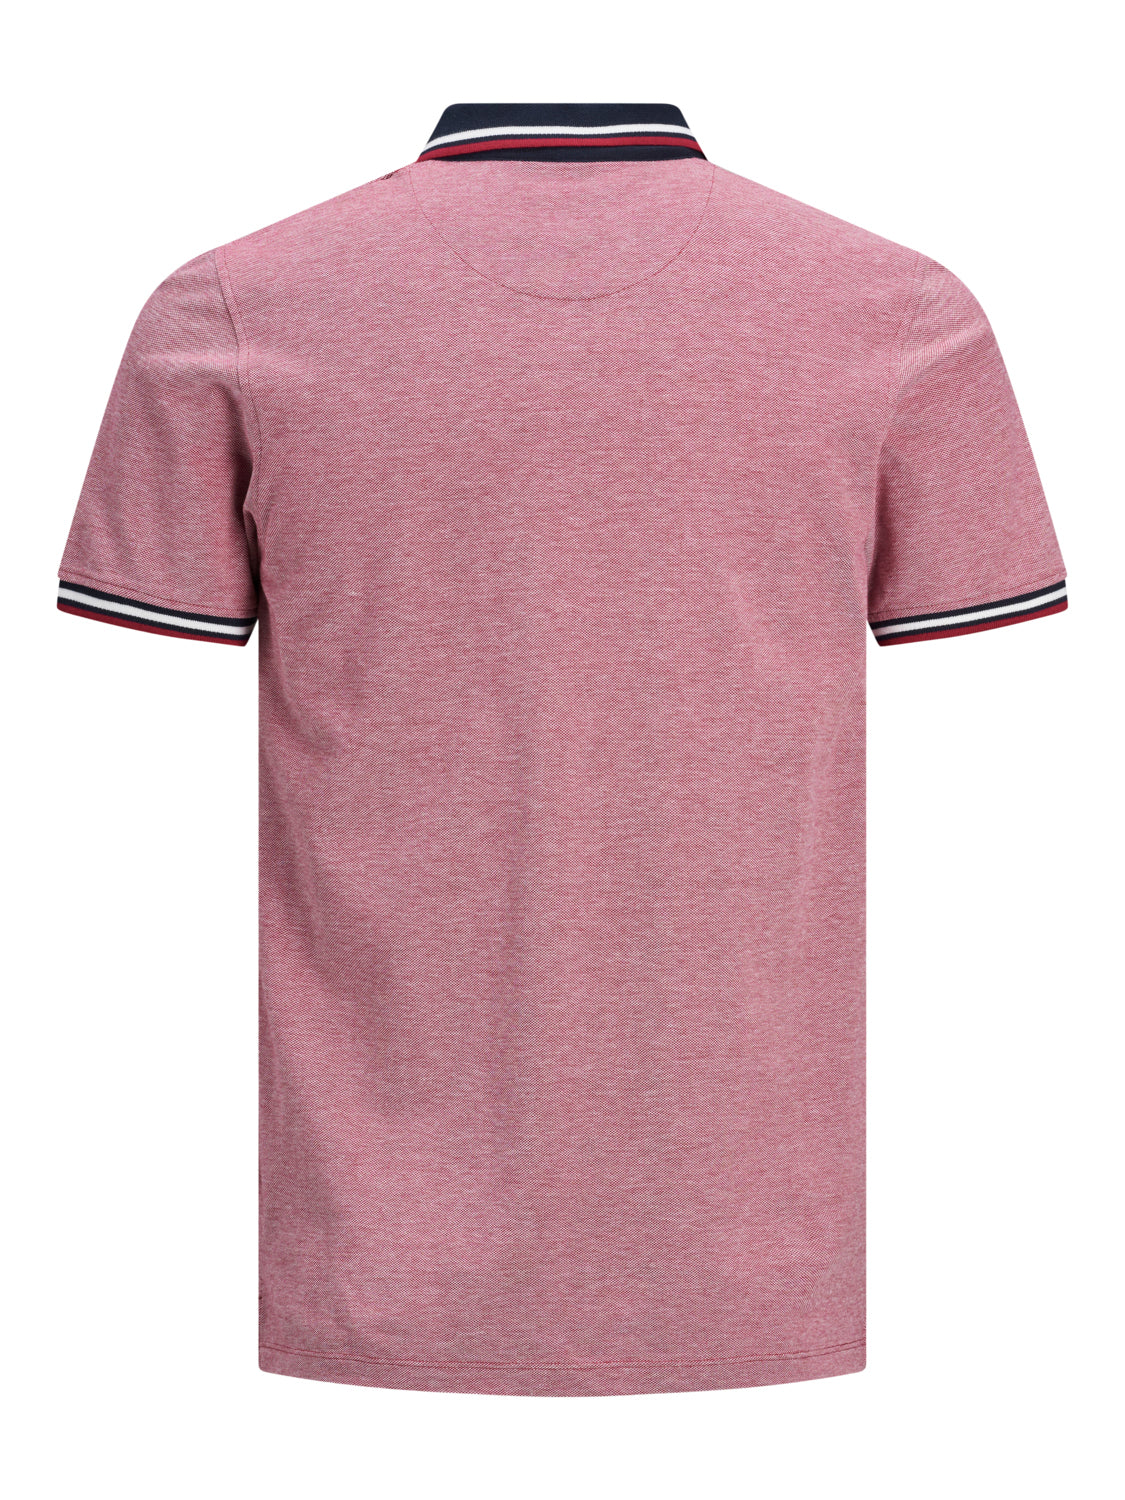 JJEPAULOS Polo Shirt - Rio Red